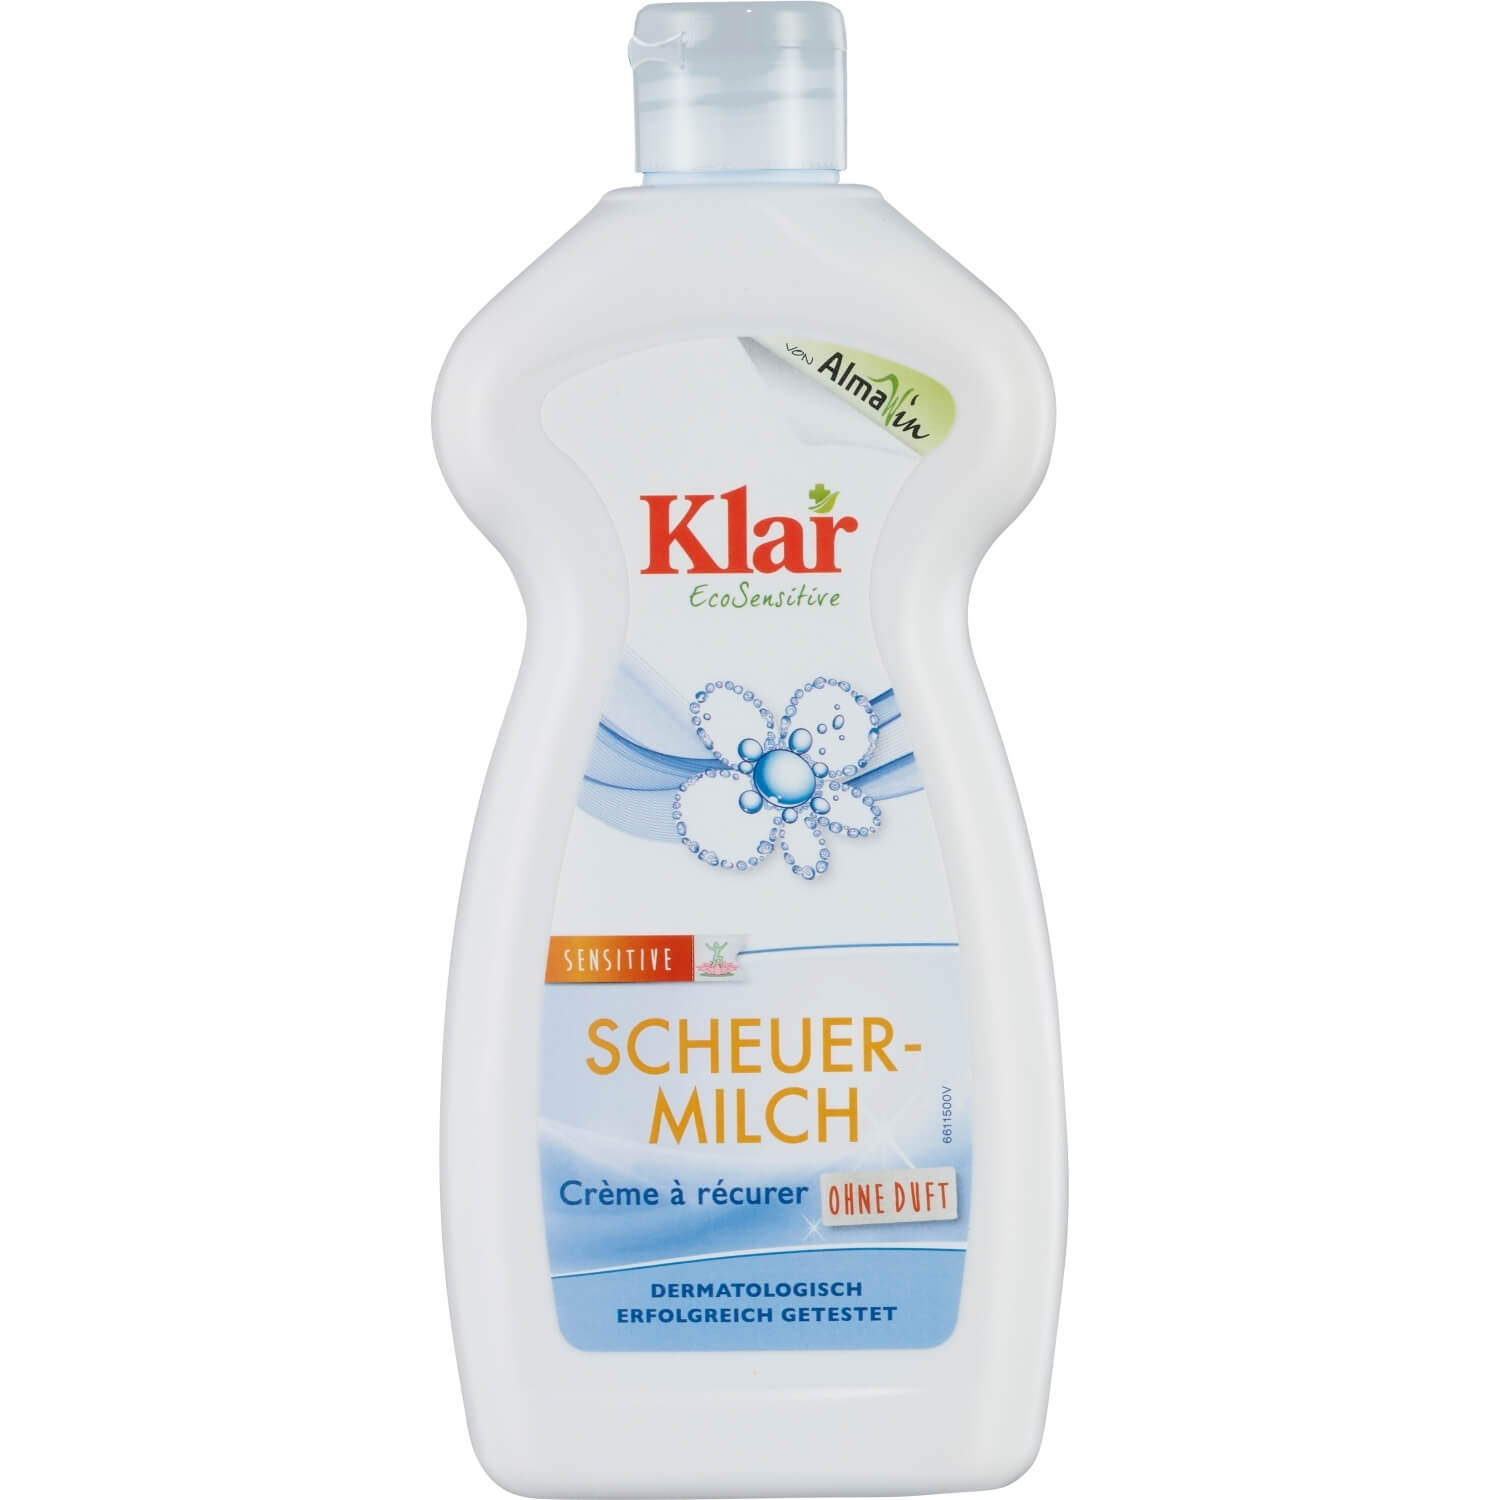 Klar Scheuermilch, 500 ml